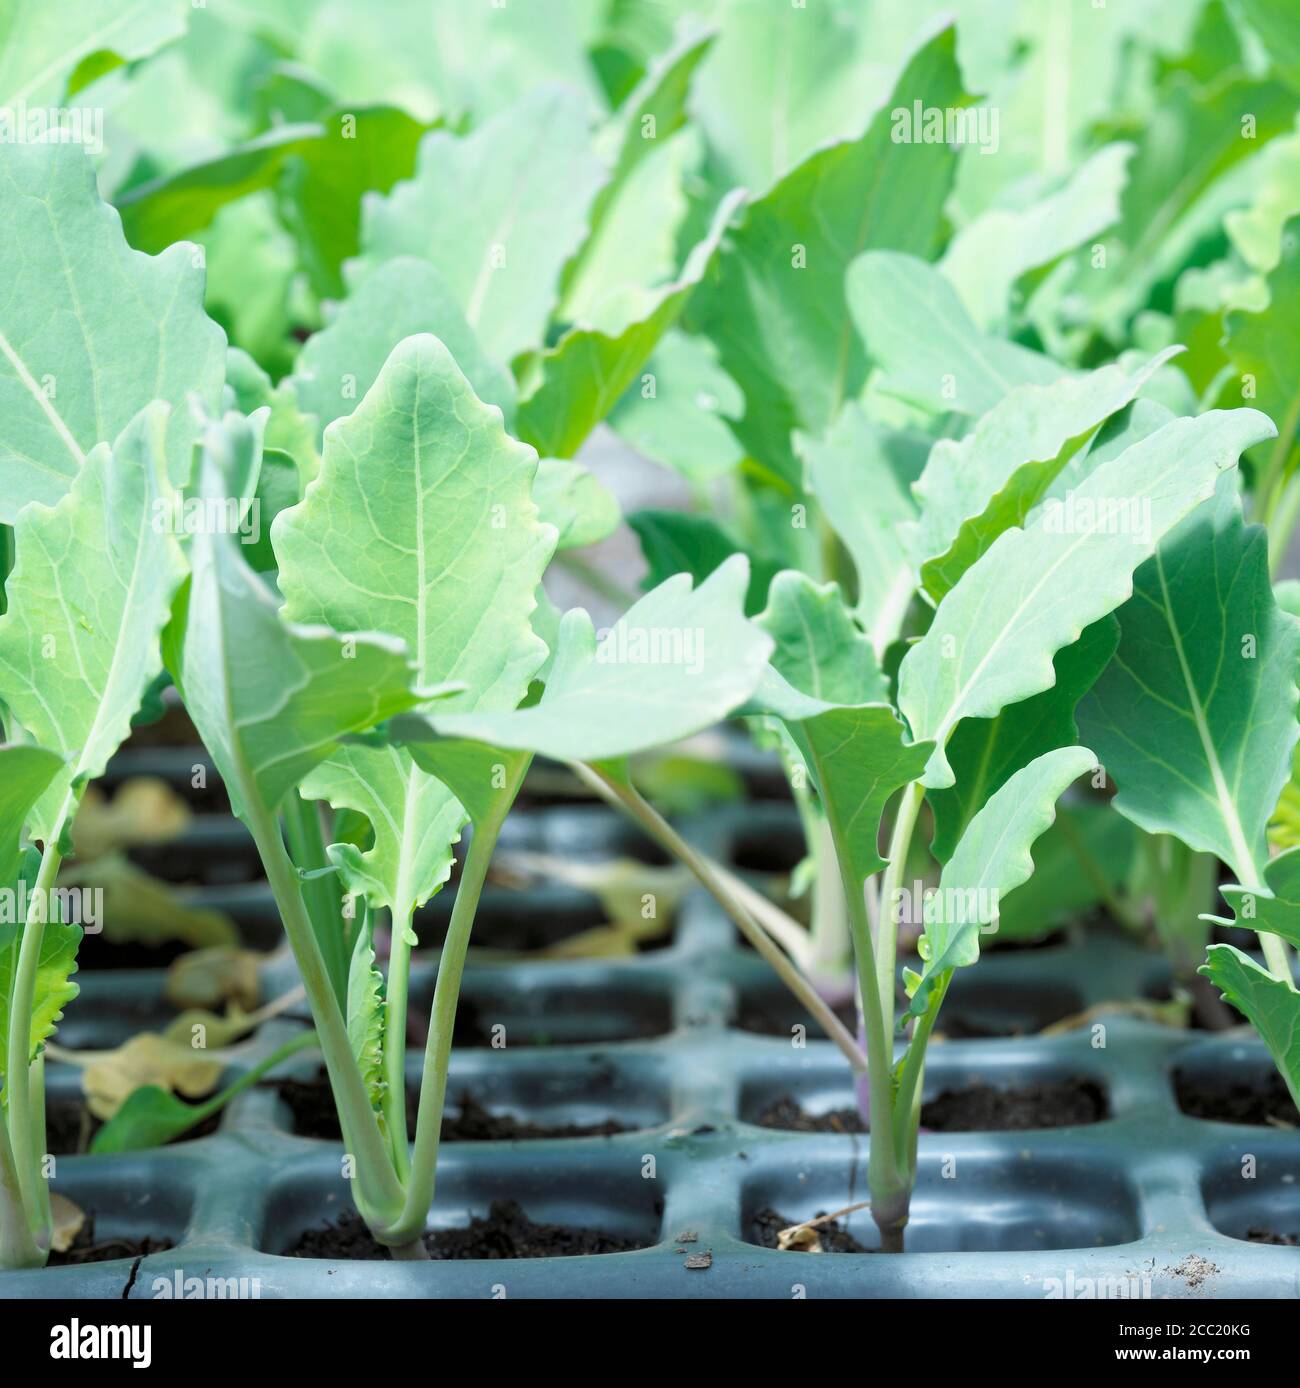 Seedlings of kohlrabies Stock Photo